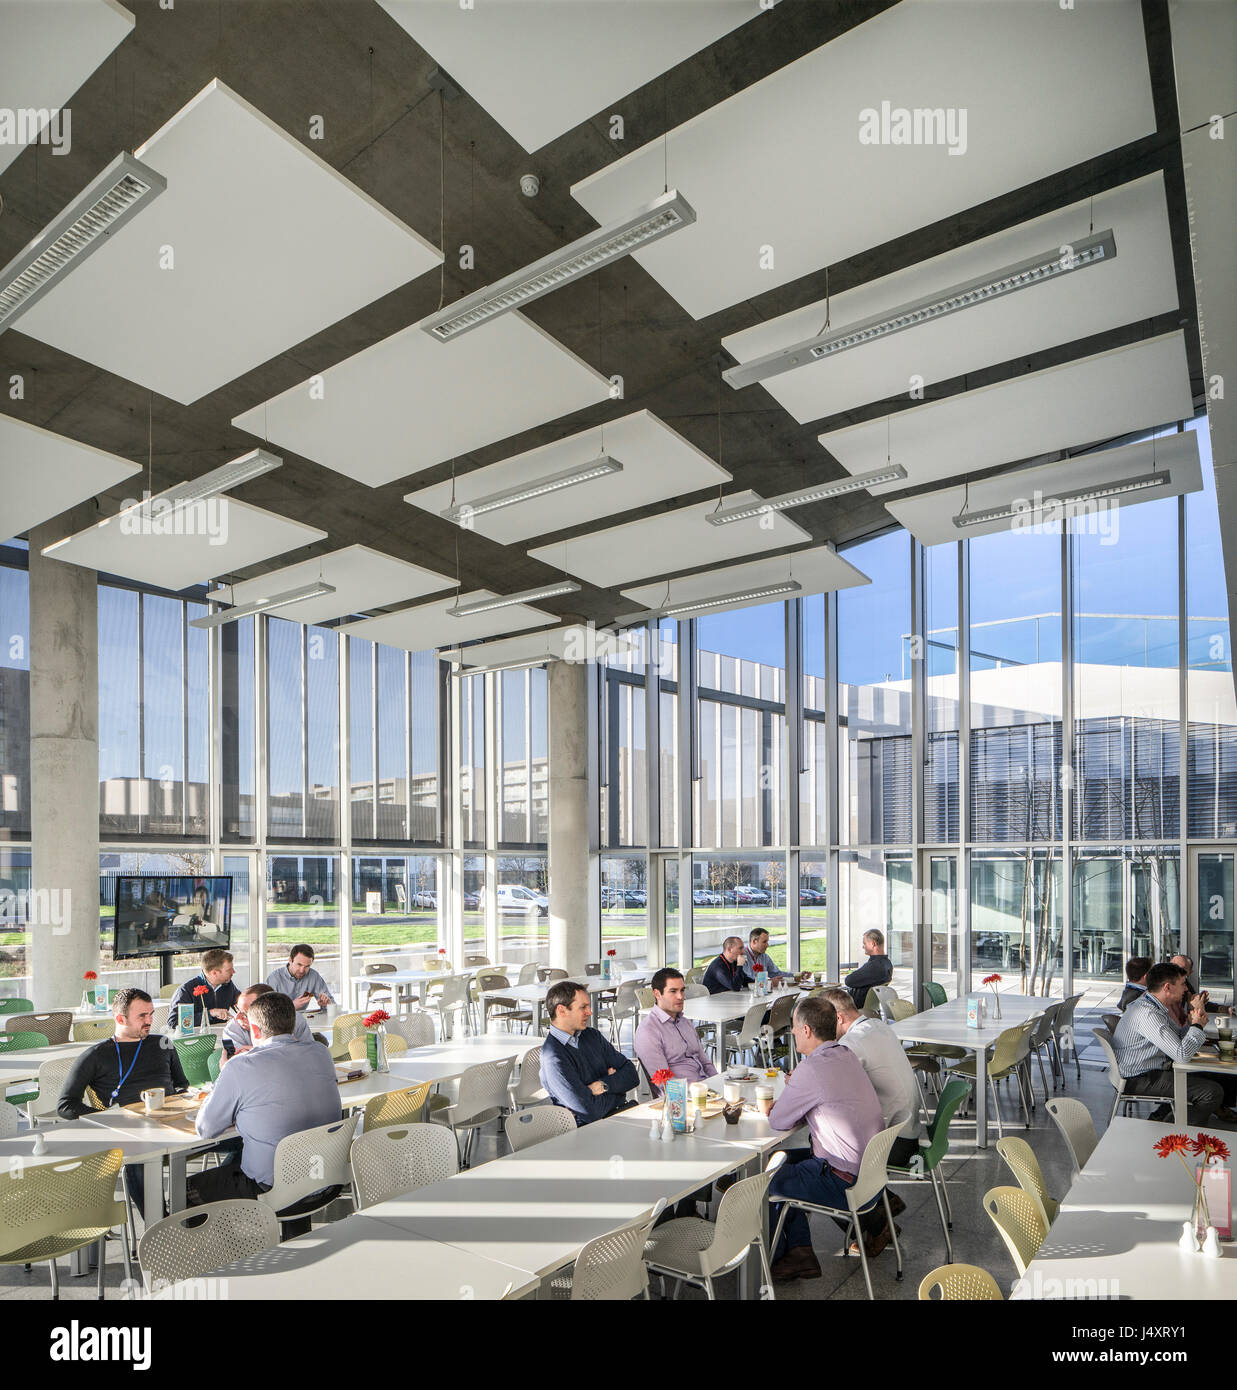 Kantine Cafe Interieur. Die Gasnetze Irland, Dublin, Irland. Architekt: Denis Byrne Architekten, 2015. Stockfoto